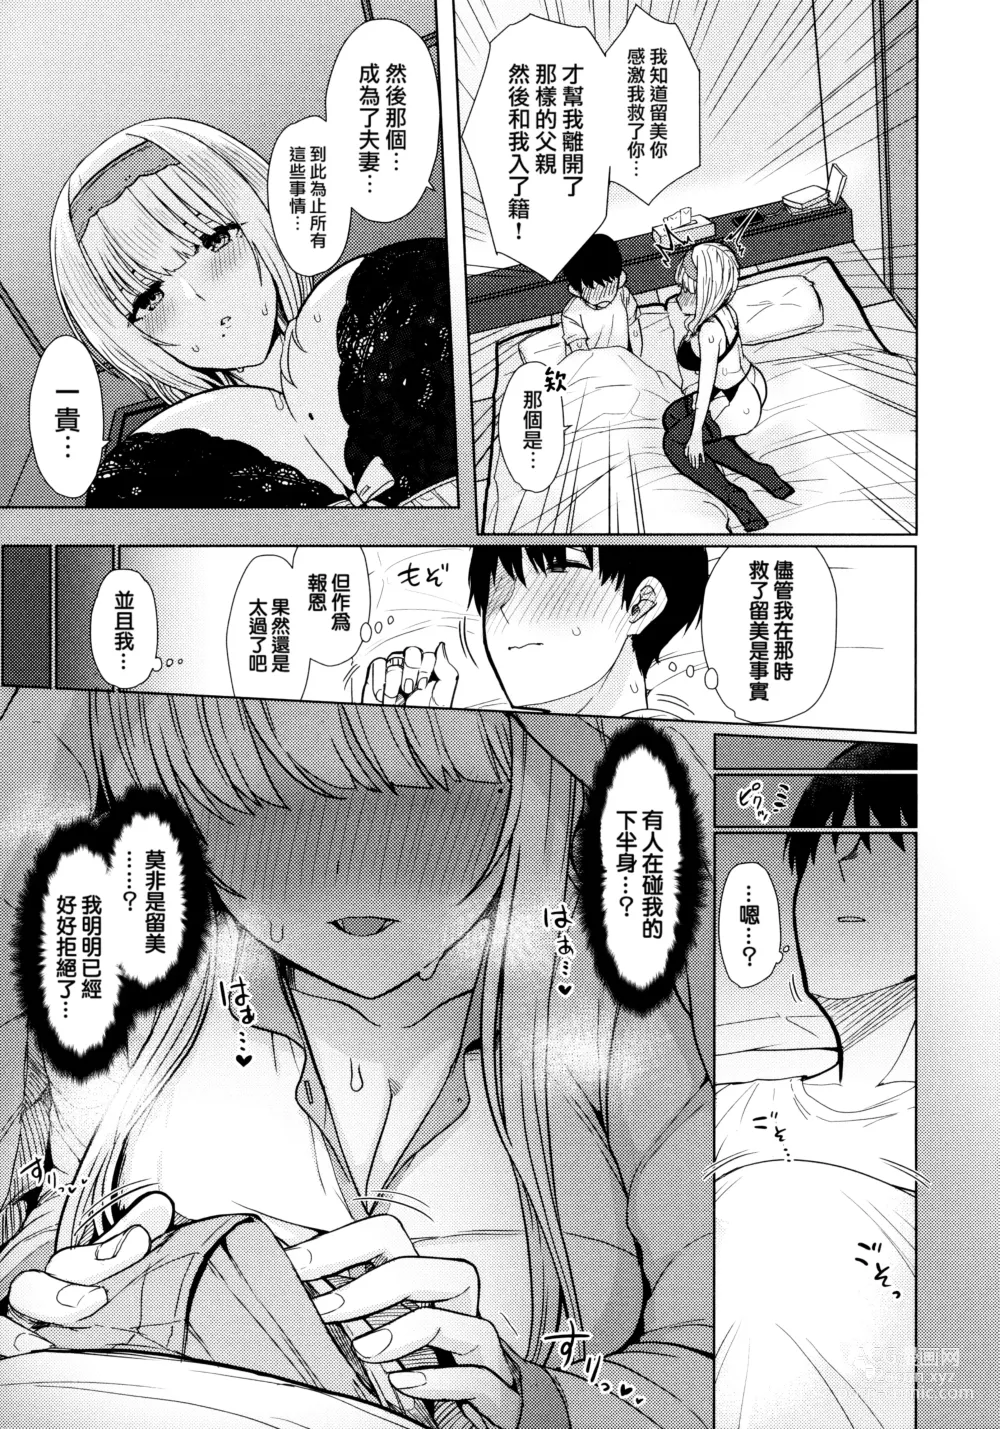 Page 9 of manga Nukunuku Seikatsu - Life Full of Sex + Melonbooks Kounyu Tokuten + Toranoana Kounyu Tokuten